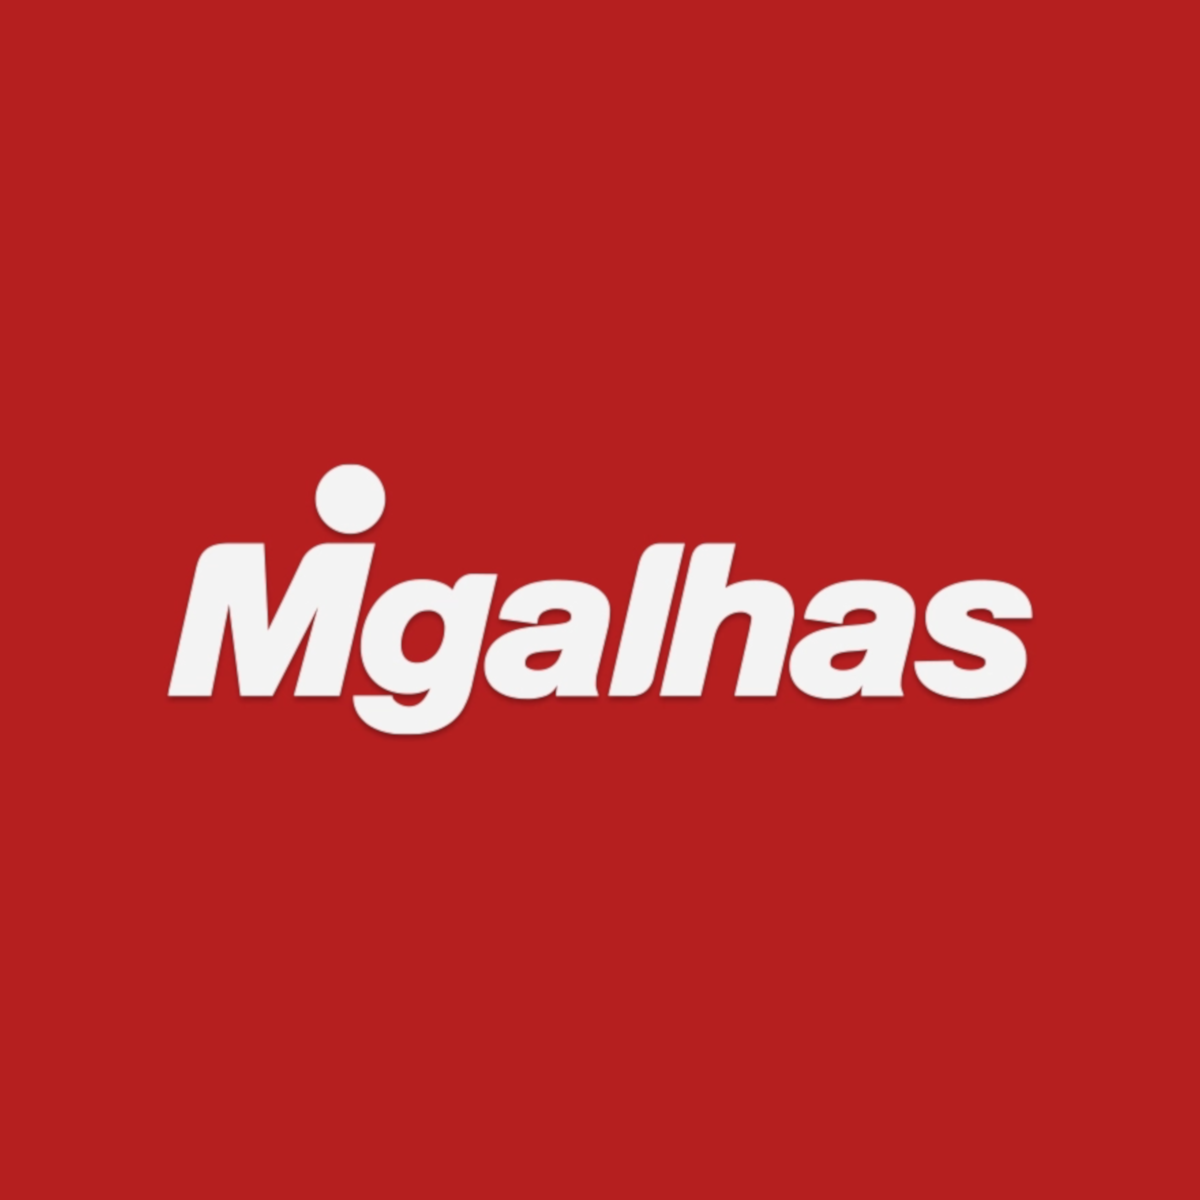 (c) Migalhas.com